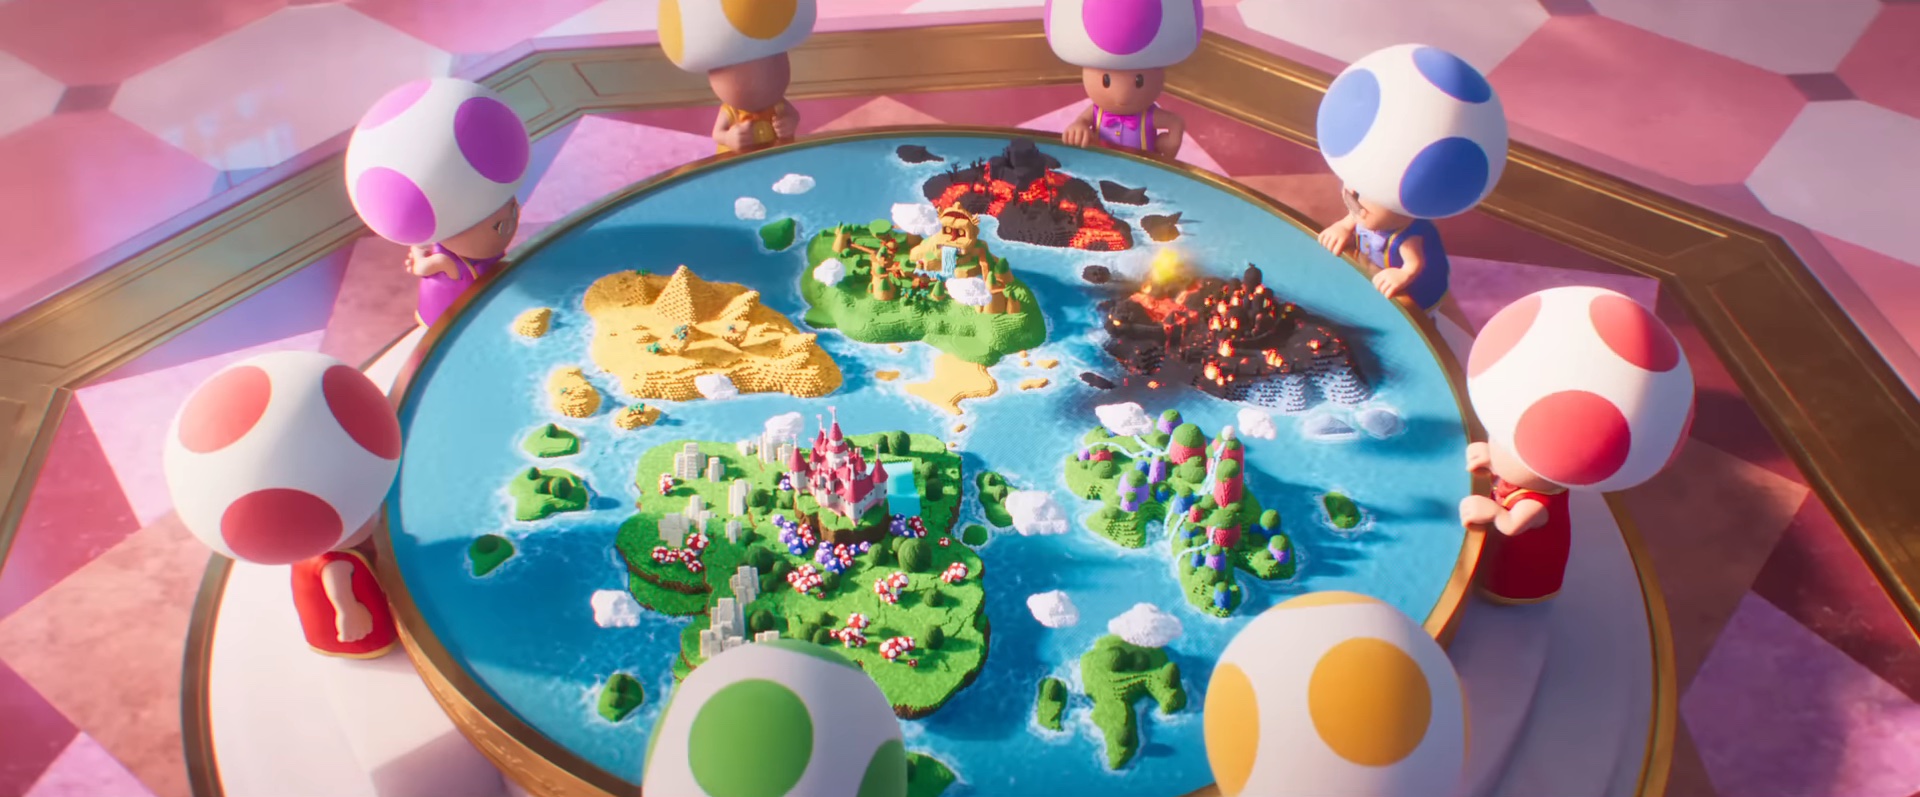 Sapos olhando para um mapa no filme Super Mario Bros. 